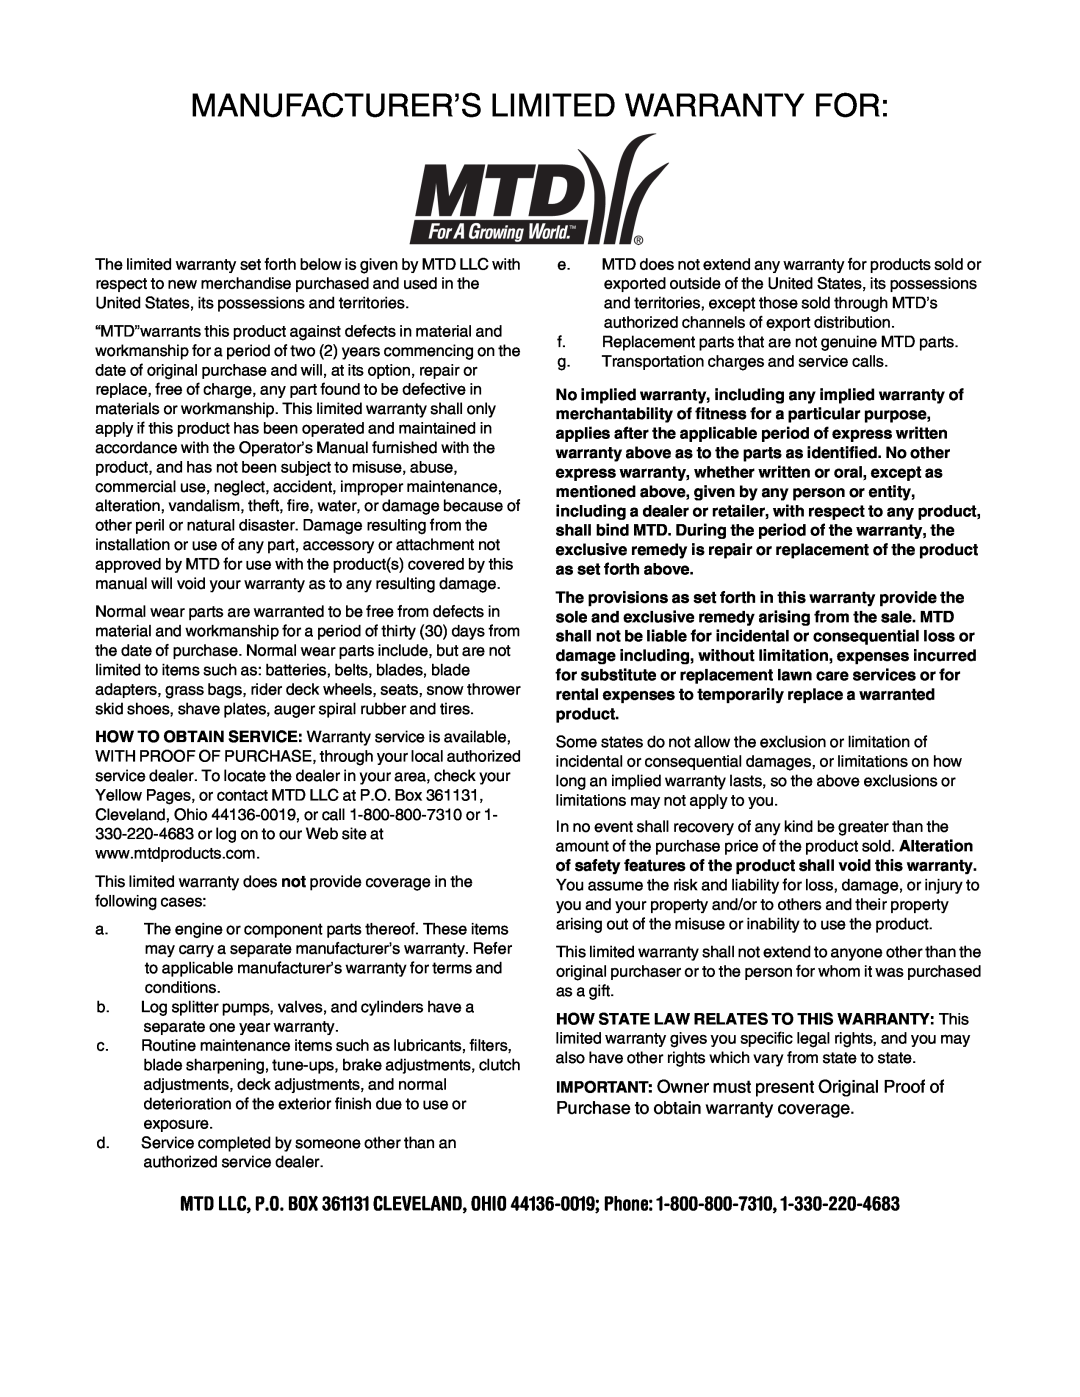 MTD 6DE manual Manufacturer’S Limited Warranty For 